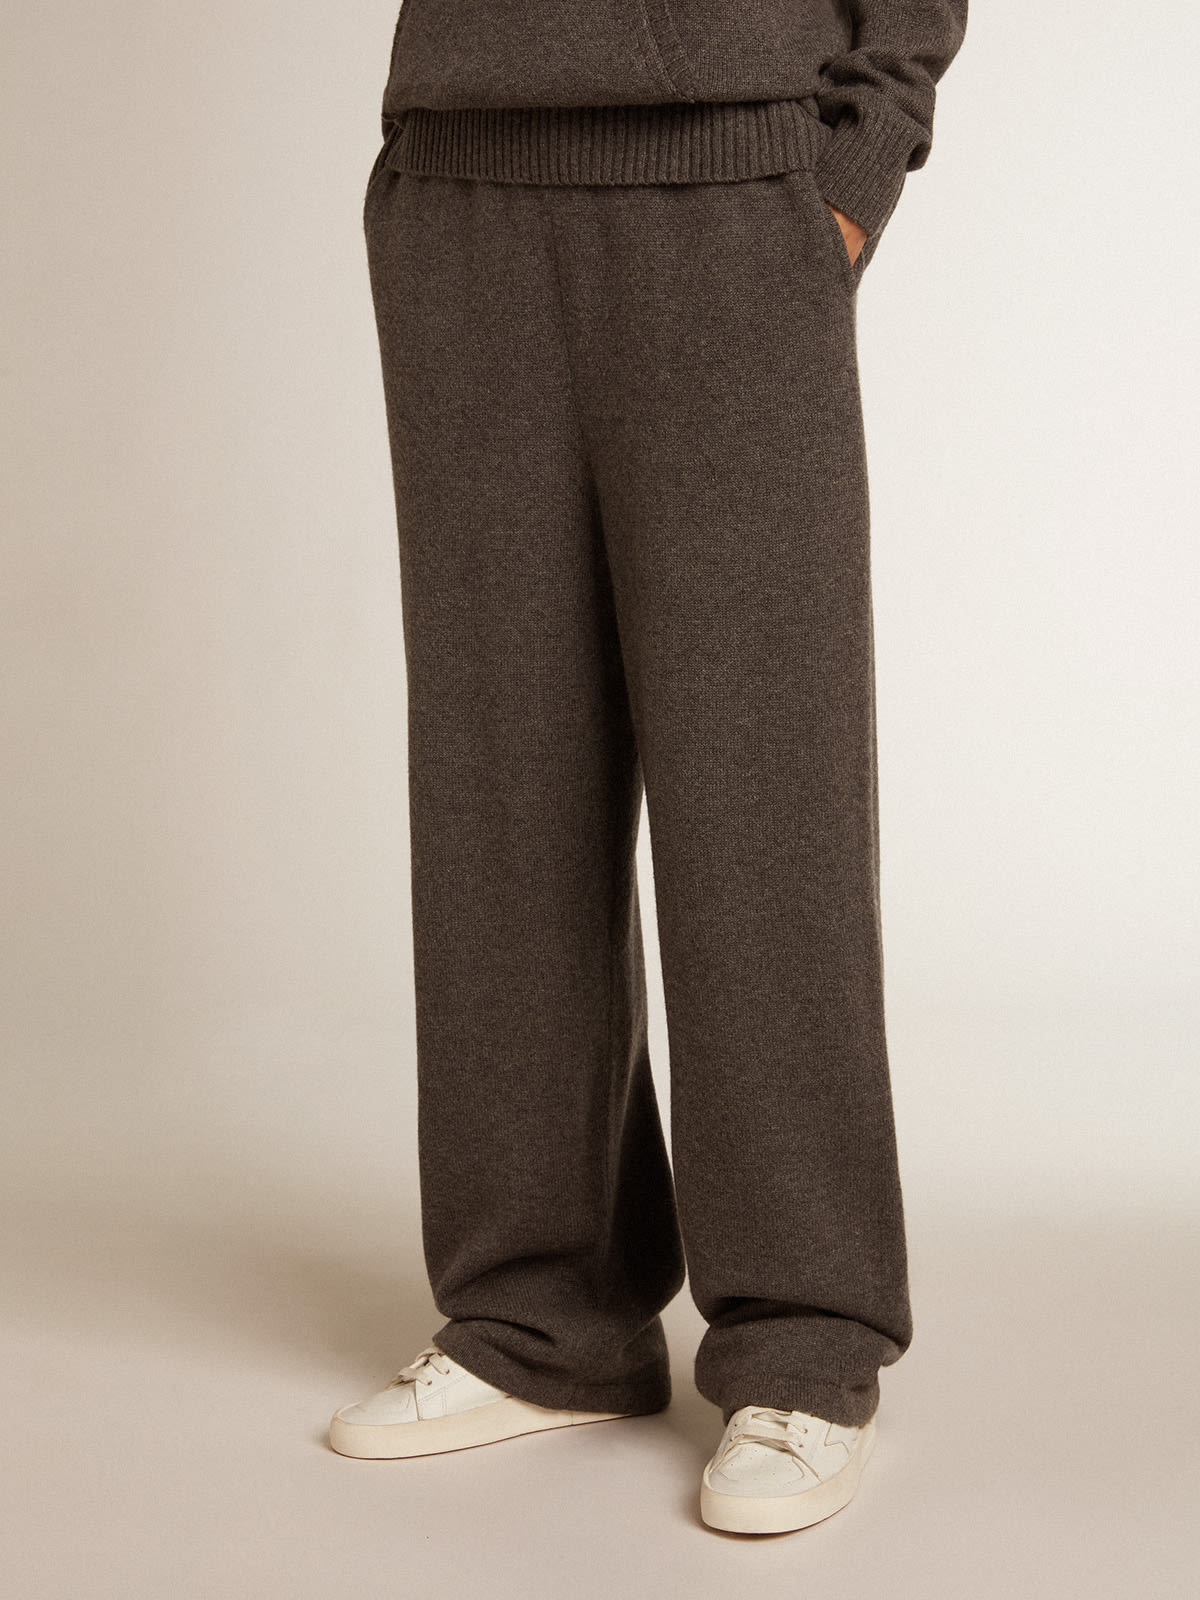 Golden Goose - Pantalón jogger de mujer en mezcla de cachemira de color gris  in 